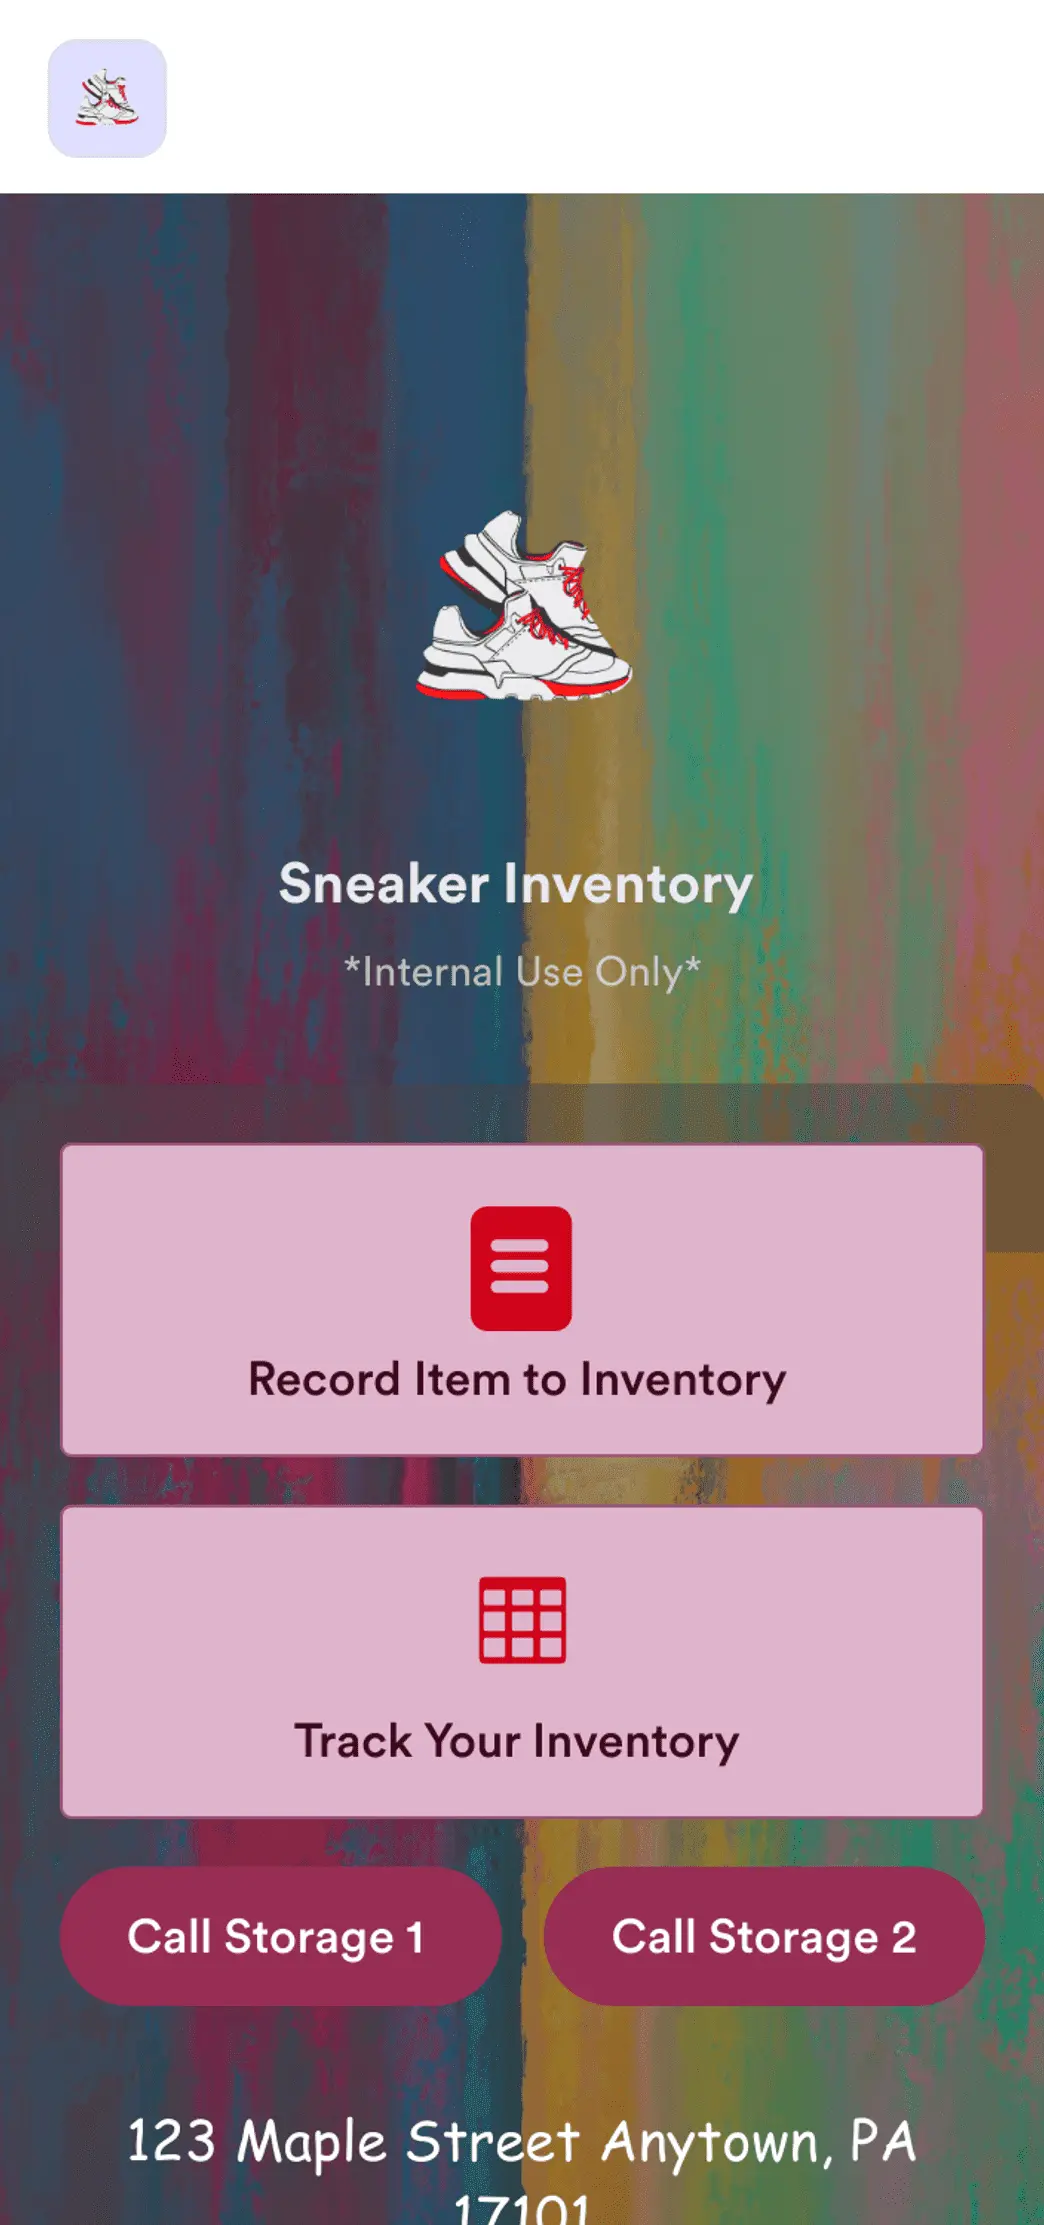 Sneaker Inventory App